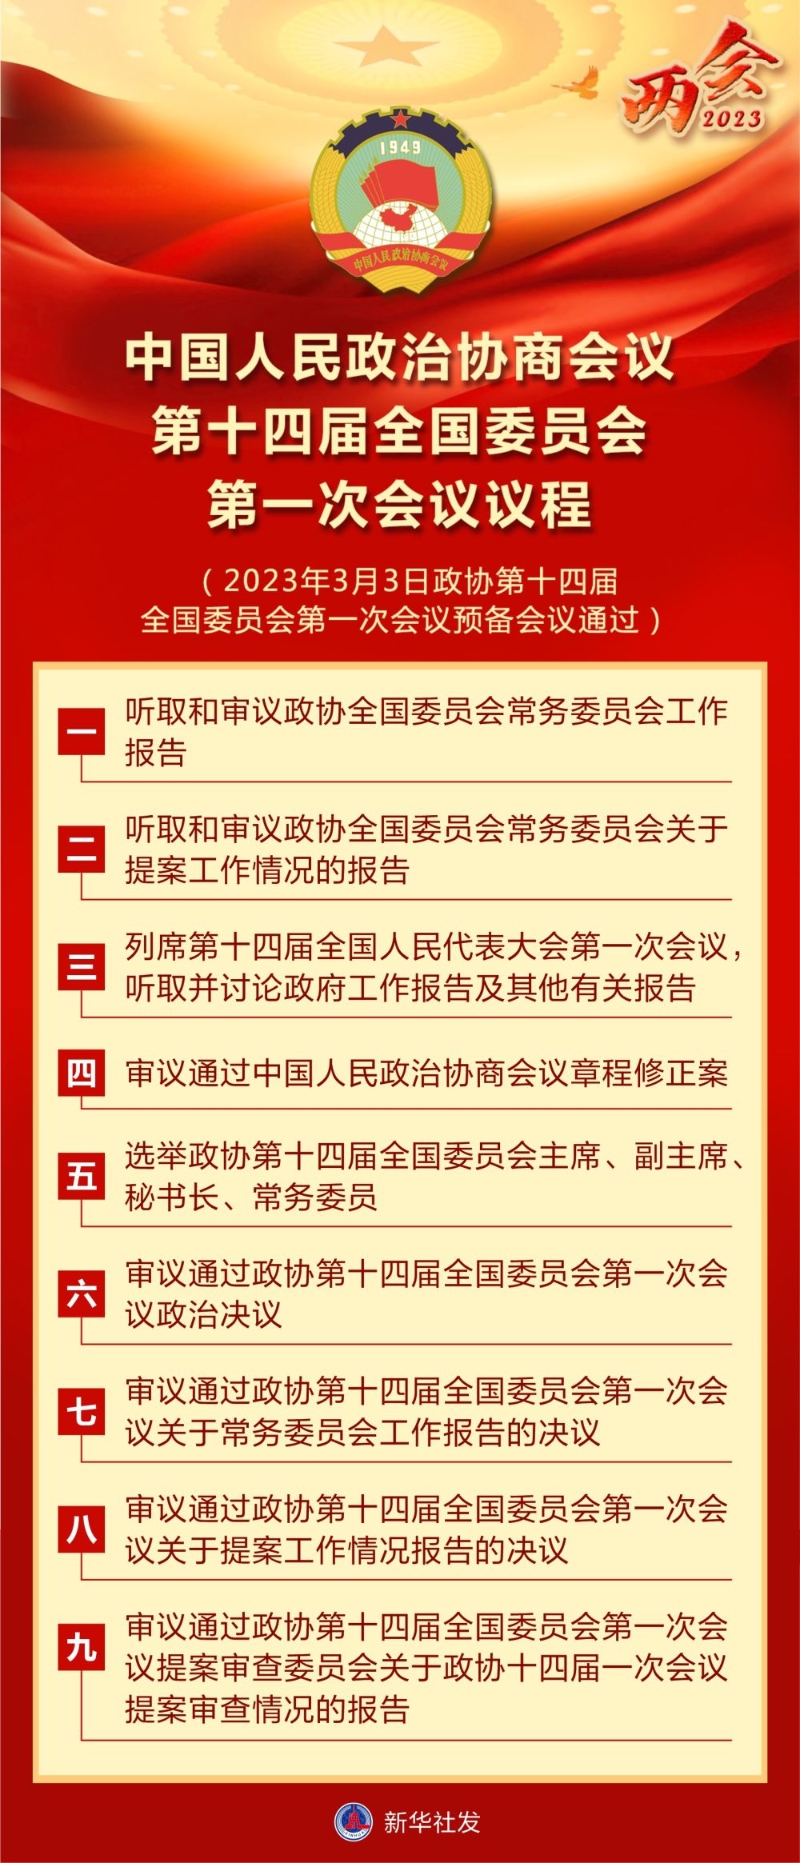 图表 | 中国人民政治协商会议第十四届全国委员会第一次会议议程